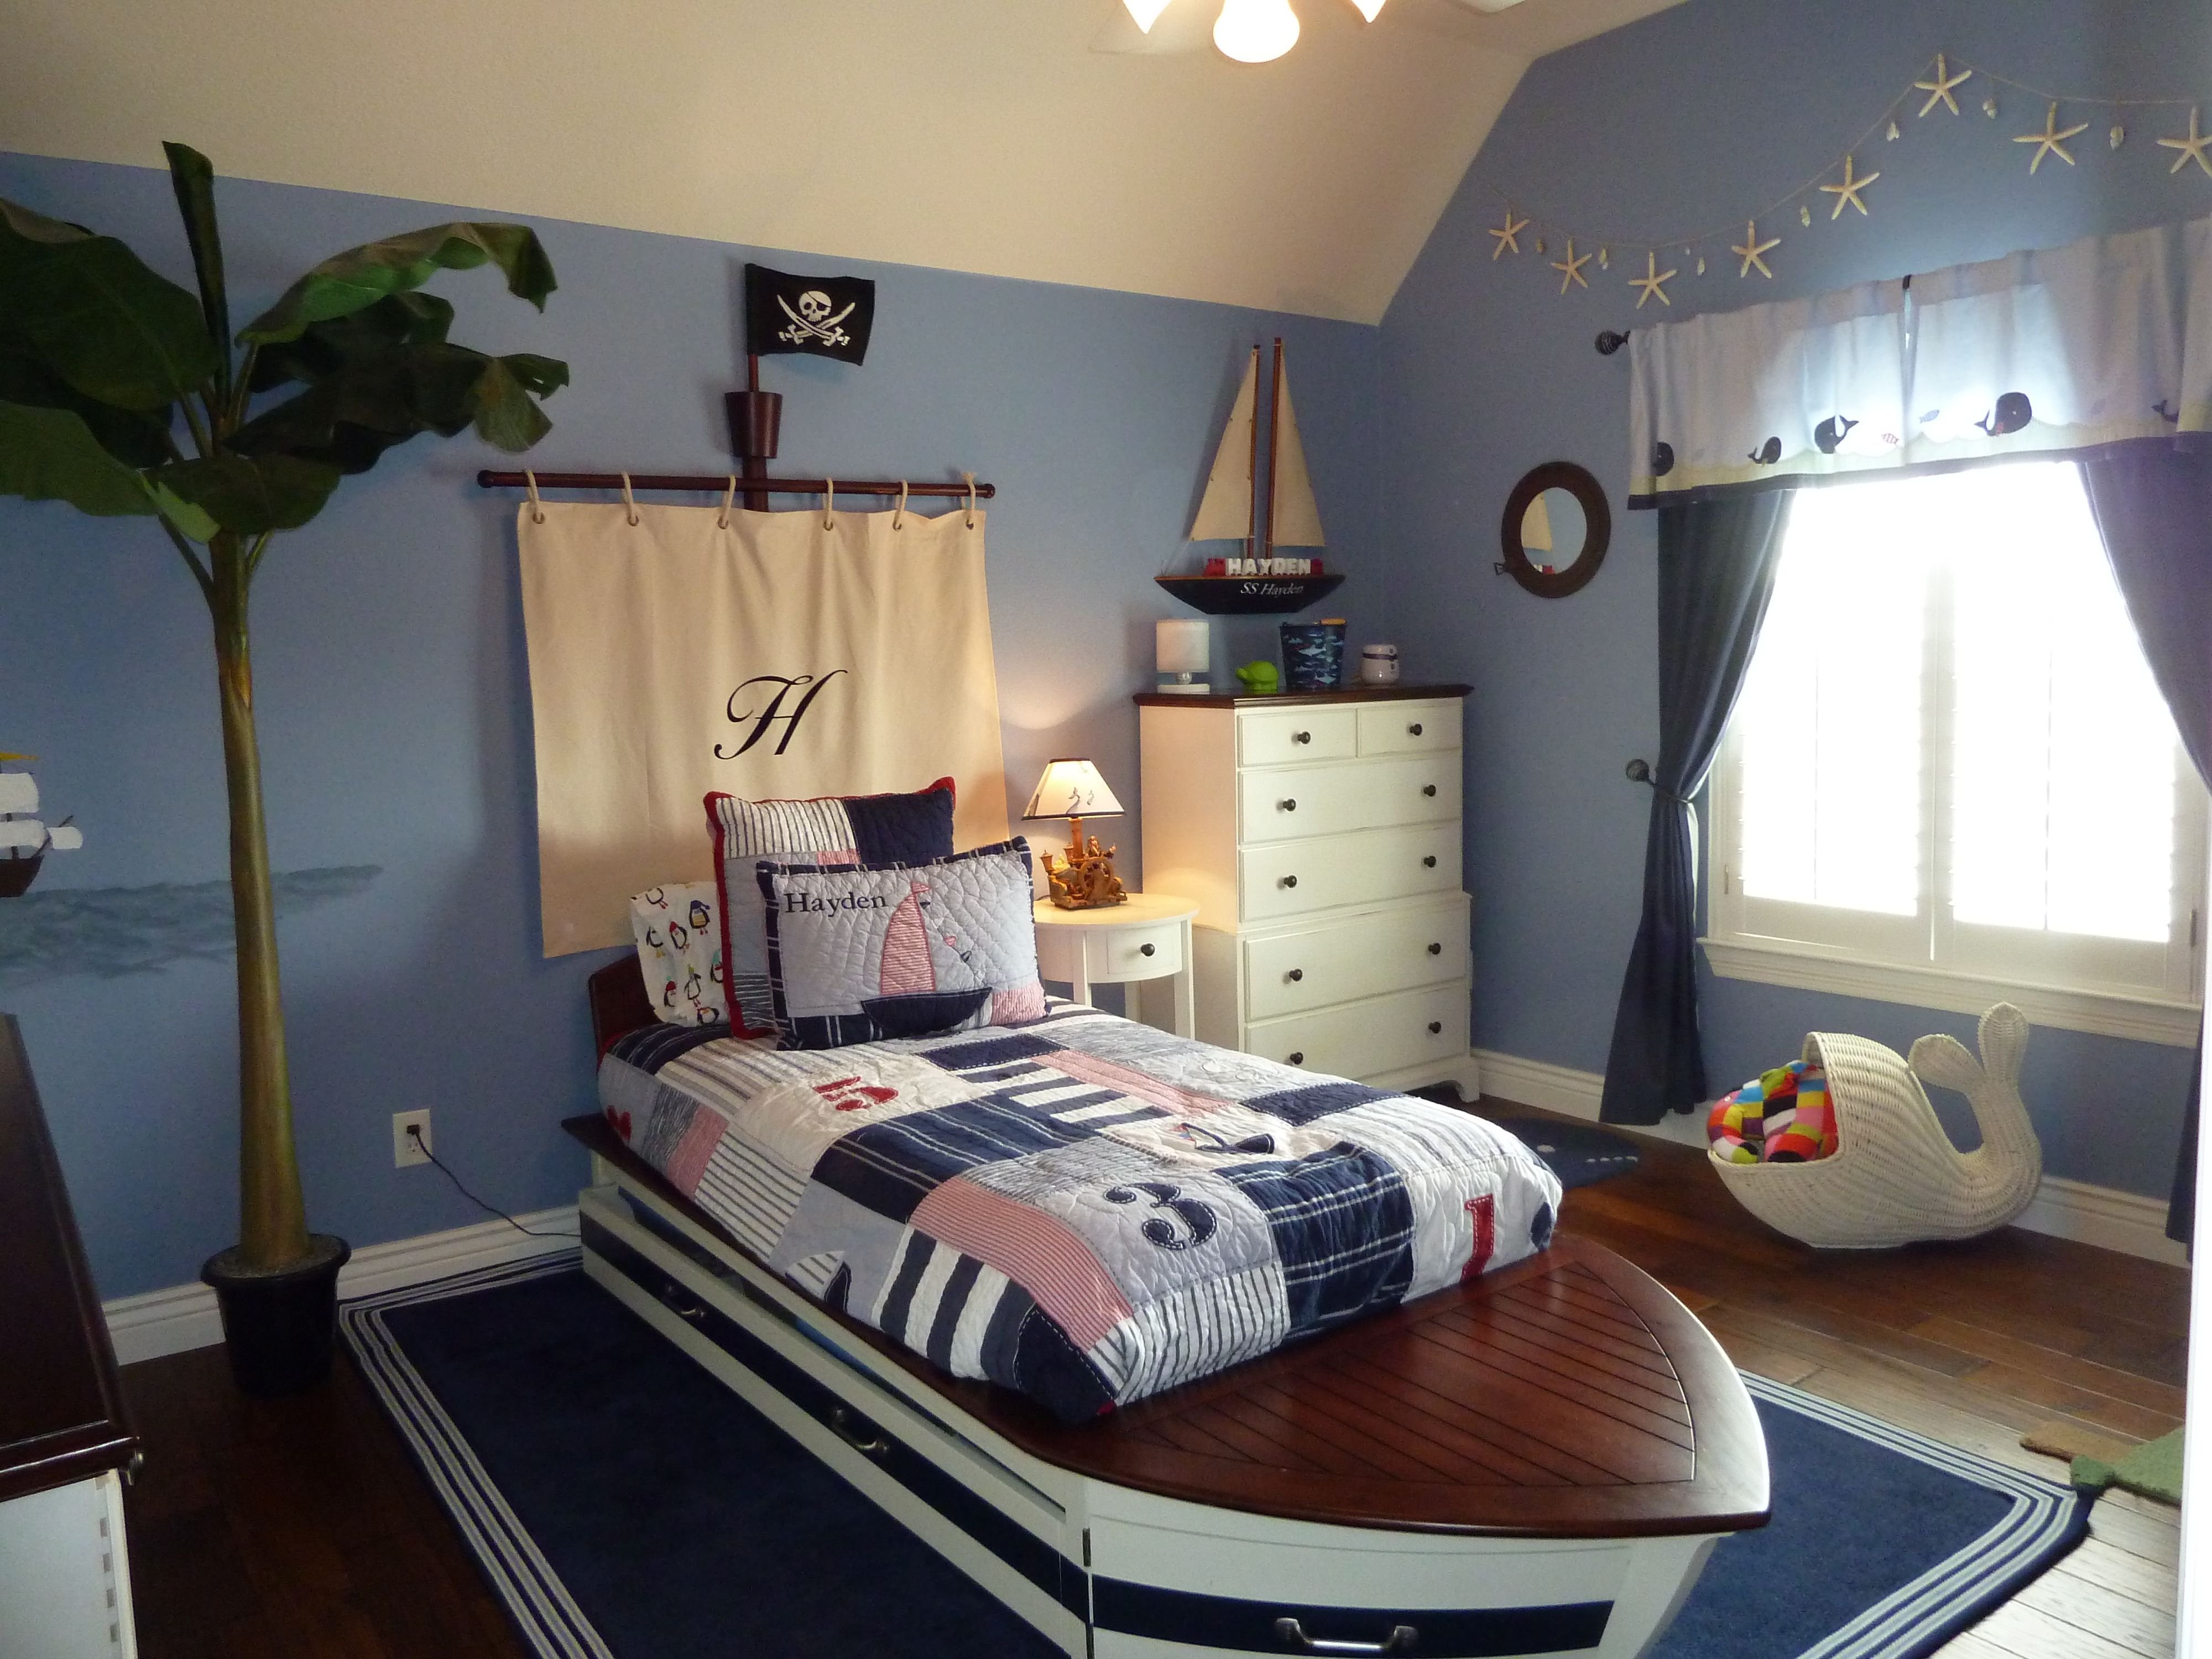 Дизайн интерьера комнаты для подростка или школьника 500+ фото